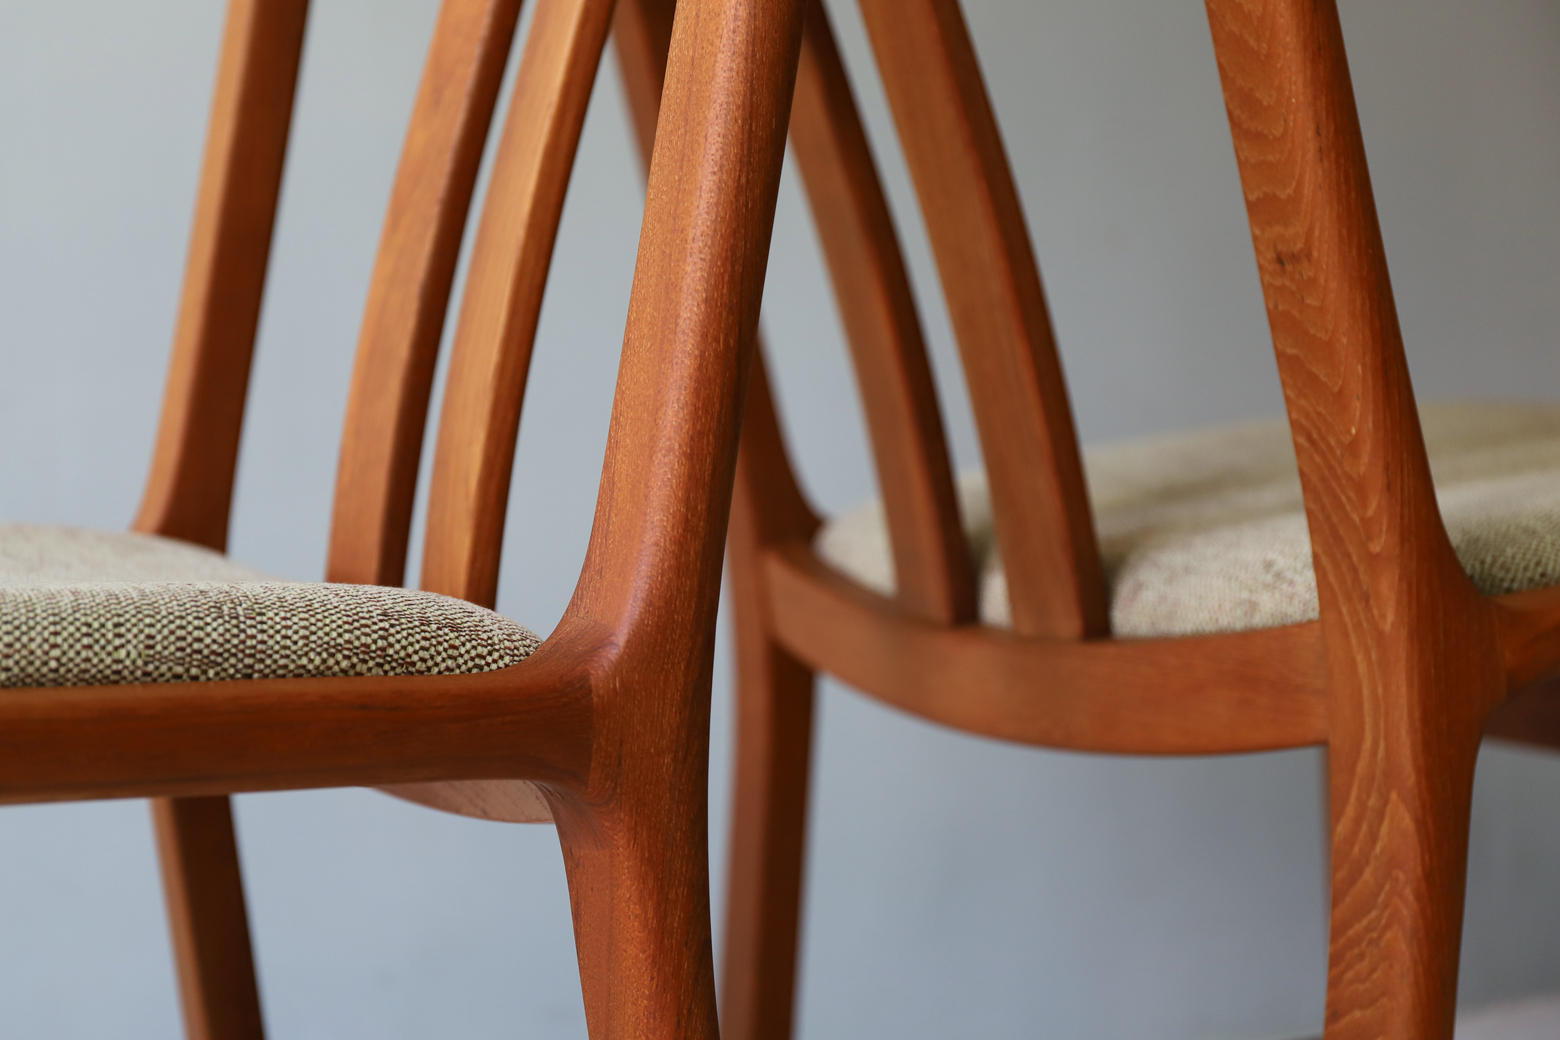 デンマーク ヴィンテージ L.オルセン&サン ダイニング チェア 北欧家具/Danish Vintage L.Olsen&Son Dining Chair